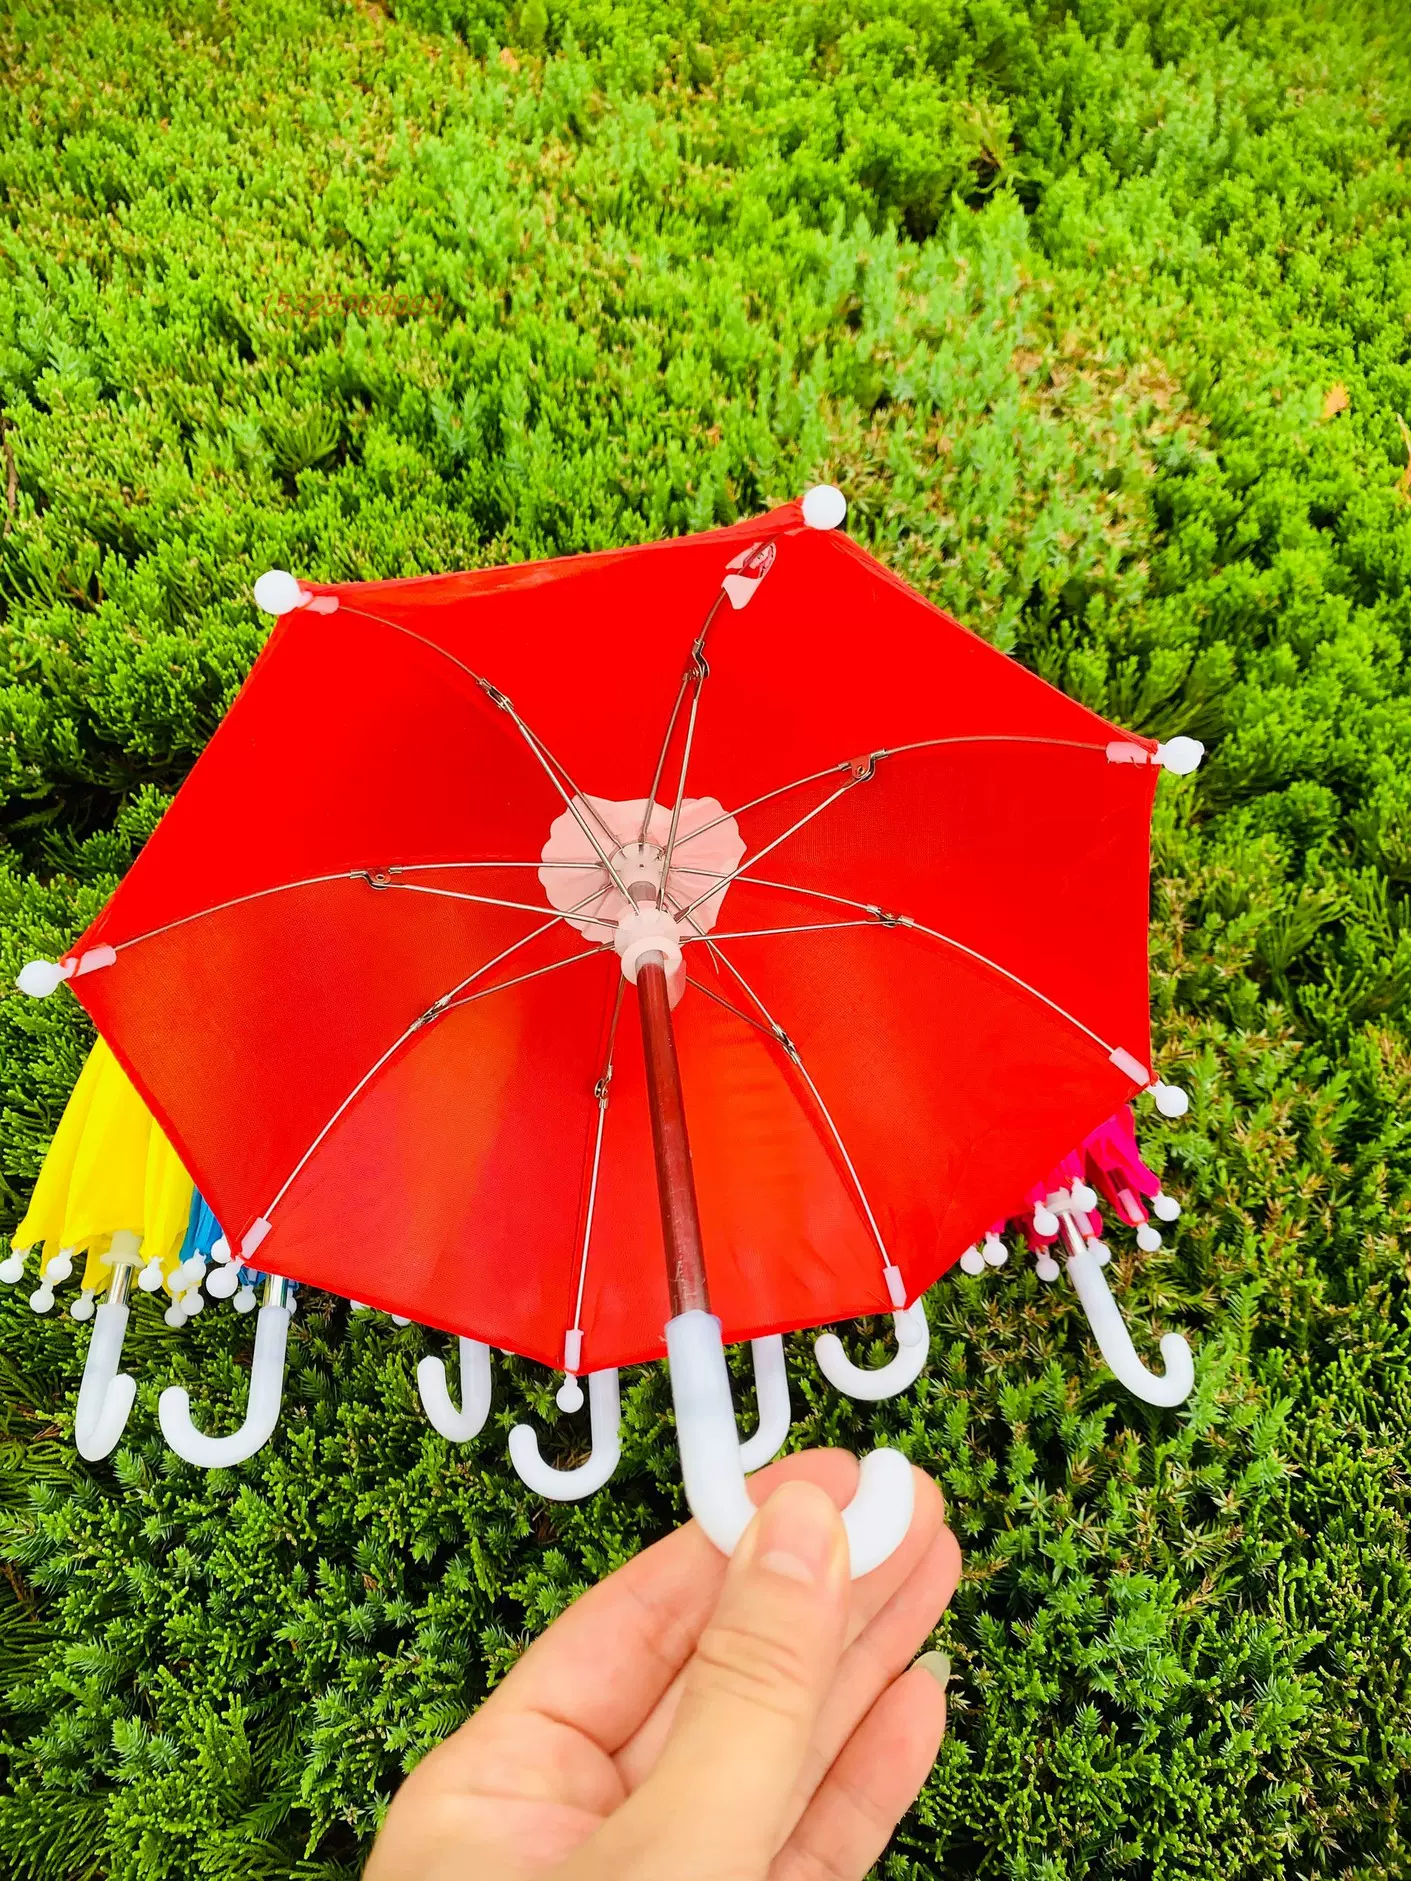 機車小傘，小雨傘玩具傘幼兒園裝飾道具兒童傘糖果色無花邊小傘-Taobao